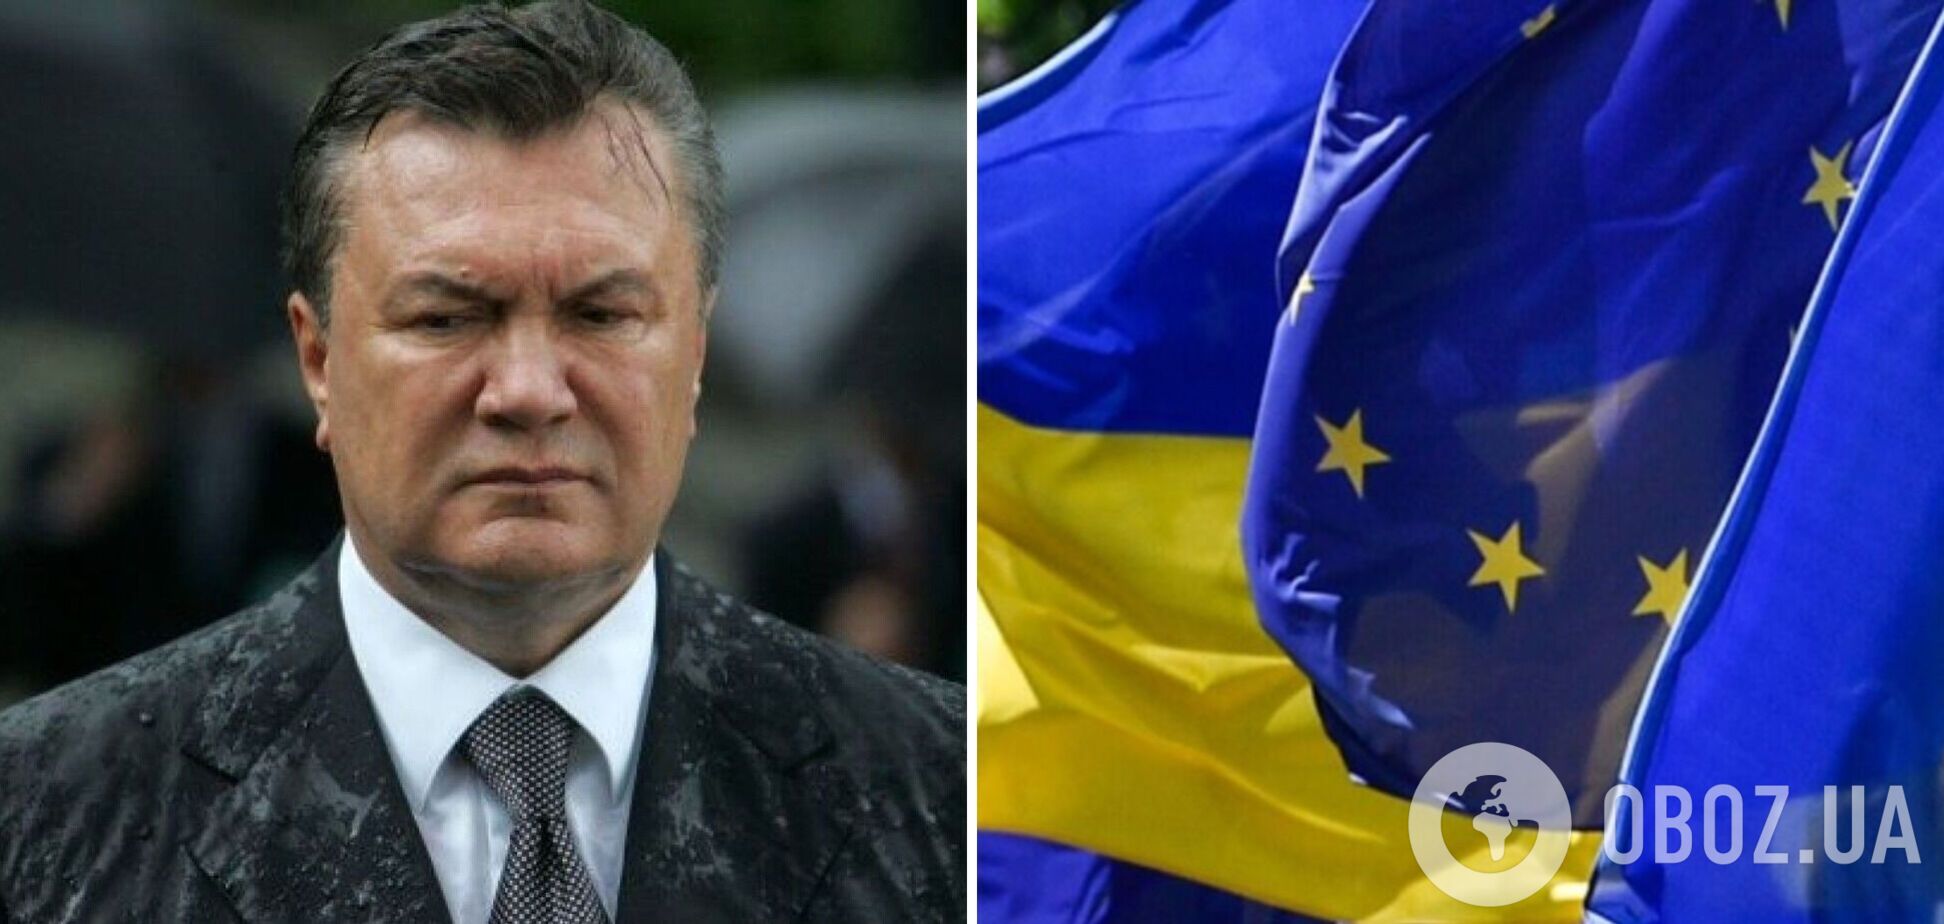 ЕС ввел новые санкции против Януковича